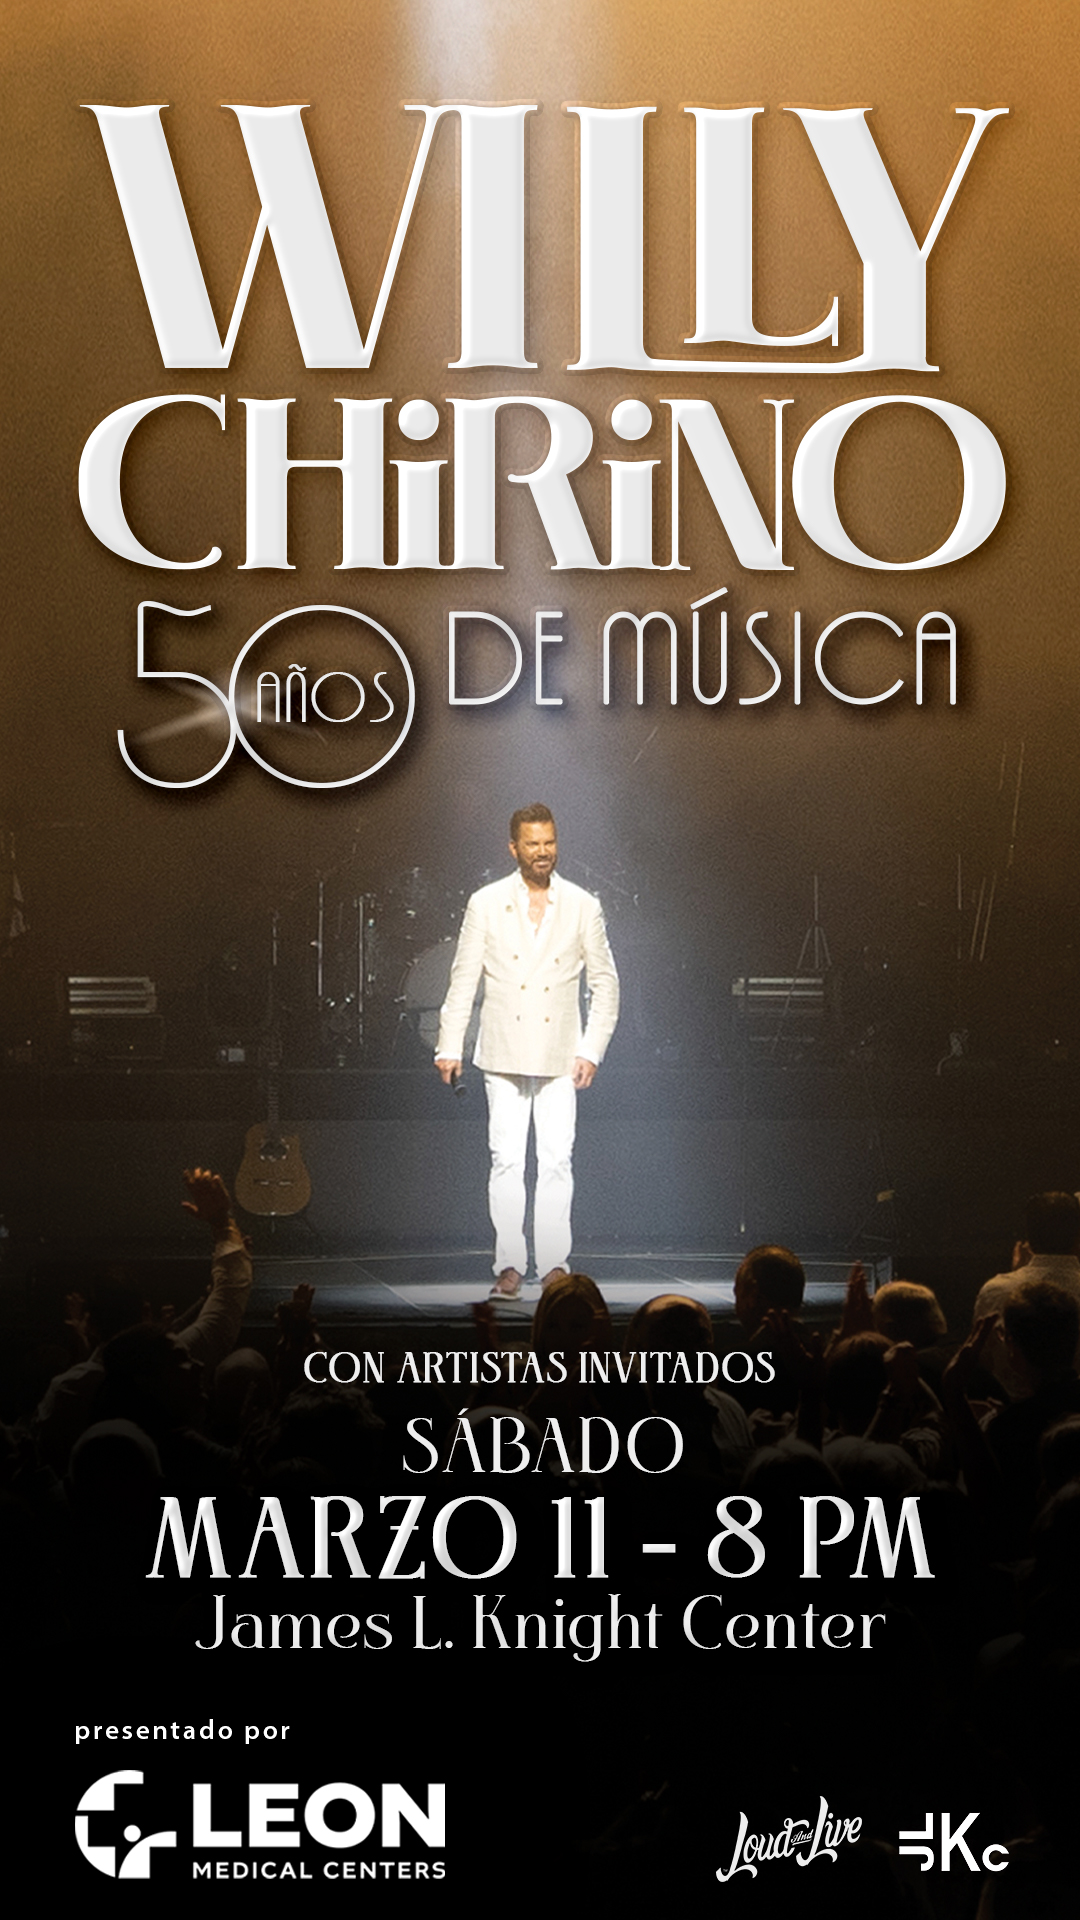 WILLY CHIRINO celebrará sus 50 años en la música a lo grande